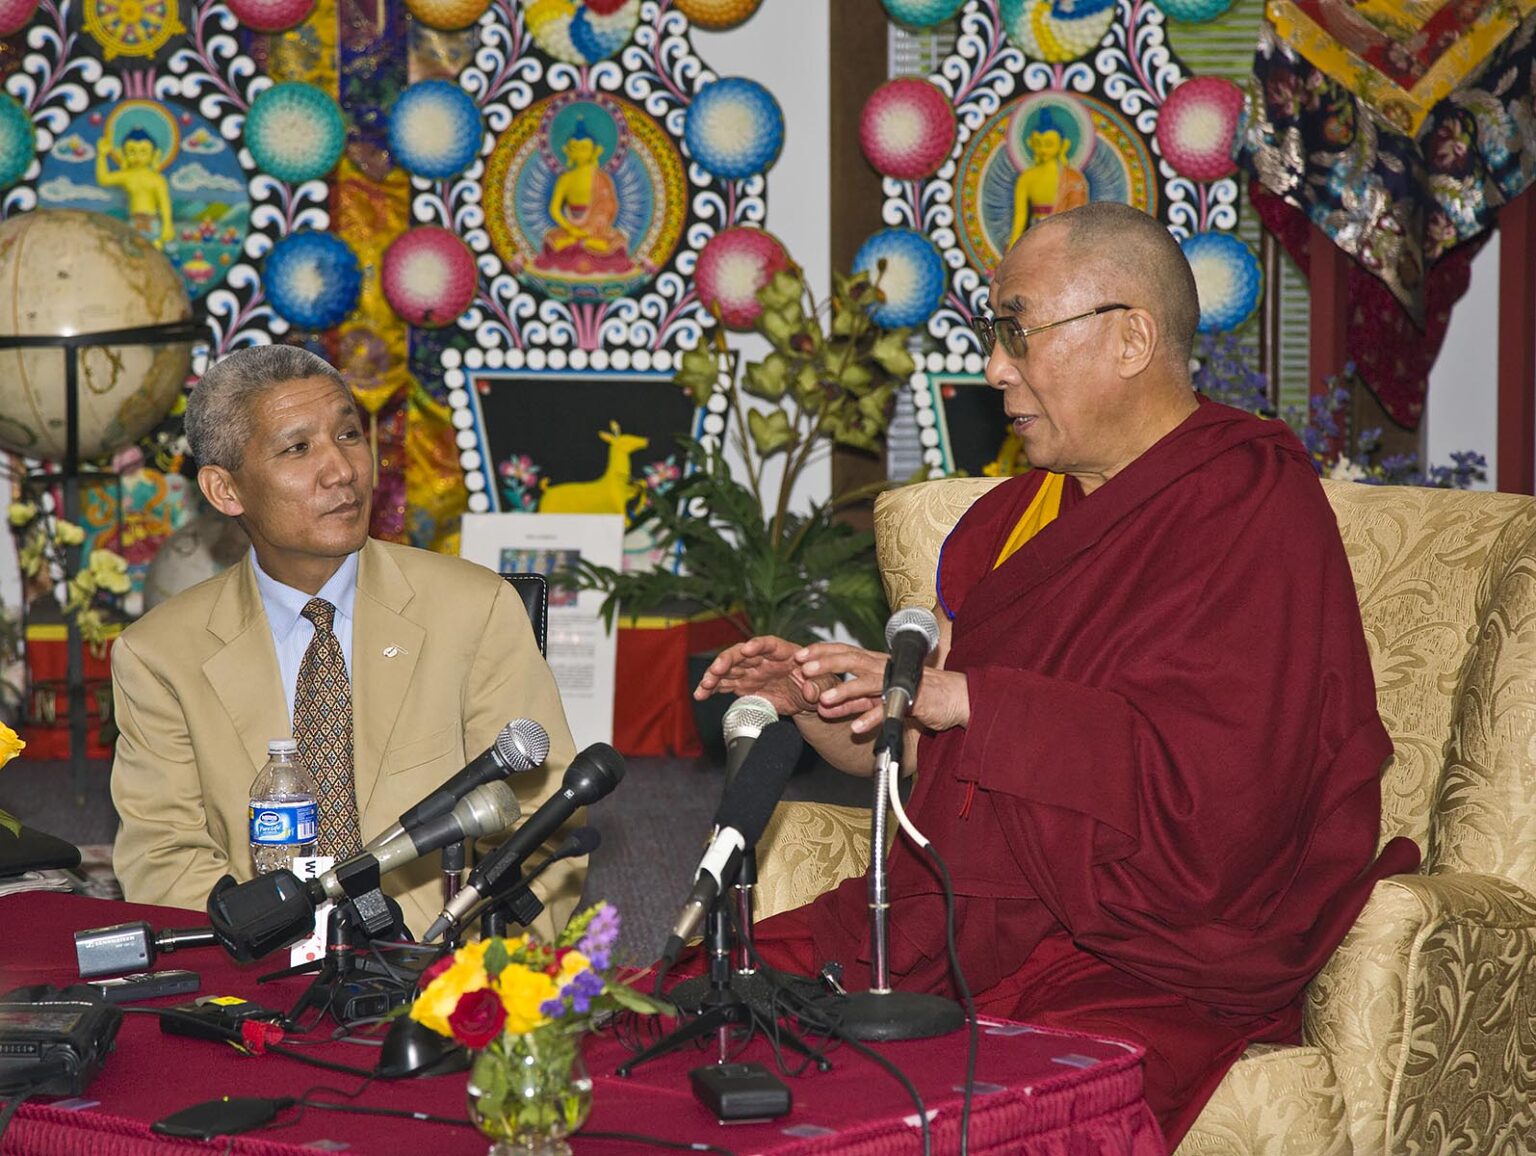 The 14th DALAI LAMA of Tibet at a press conference - BLOOMINGTON, INDIANA